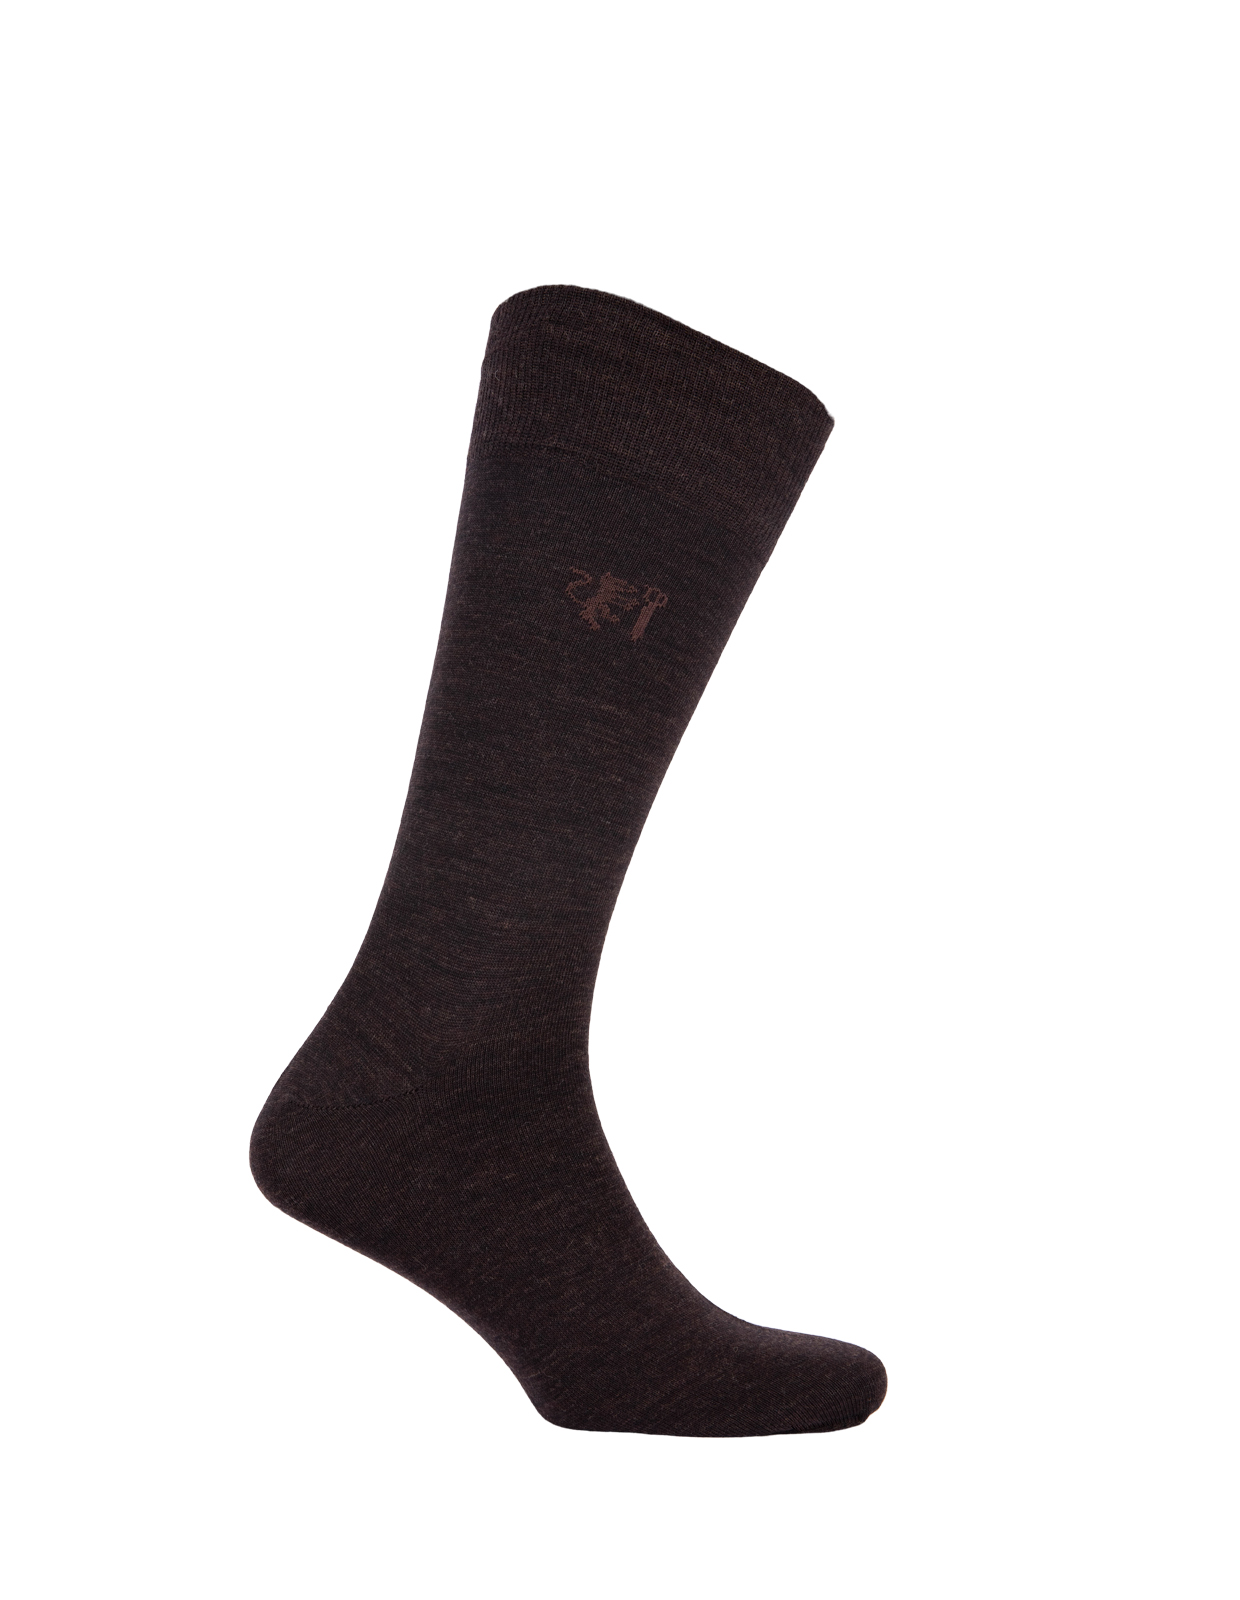 Socks Wool Blend Brown Stl 44-46